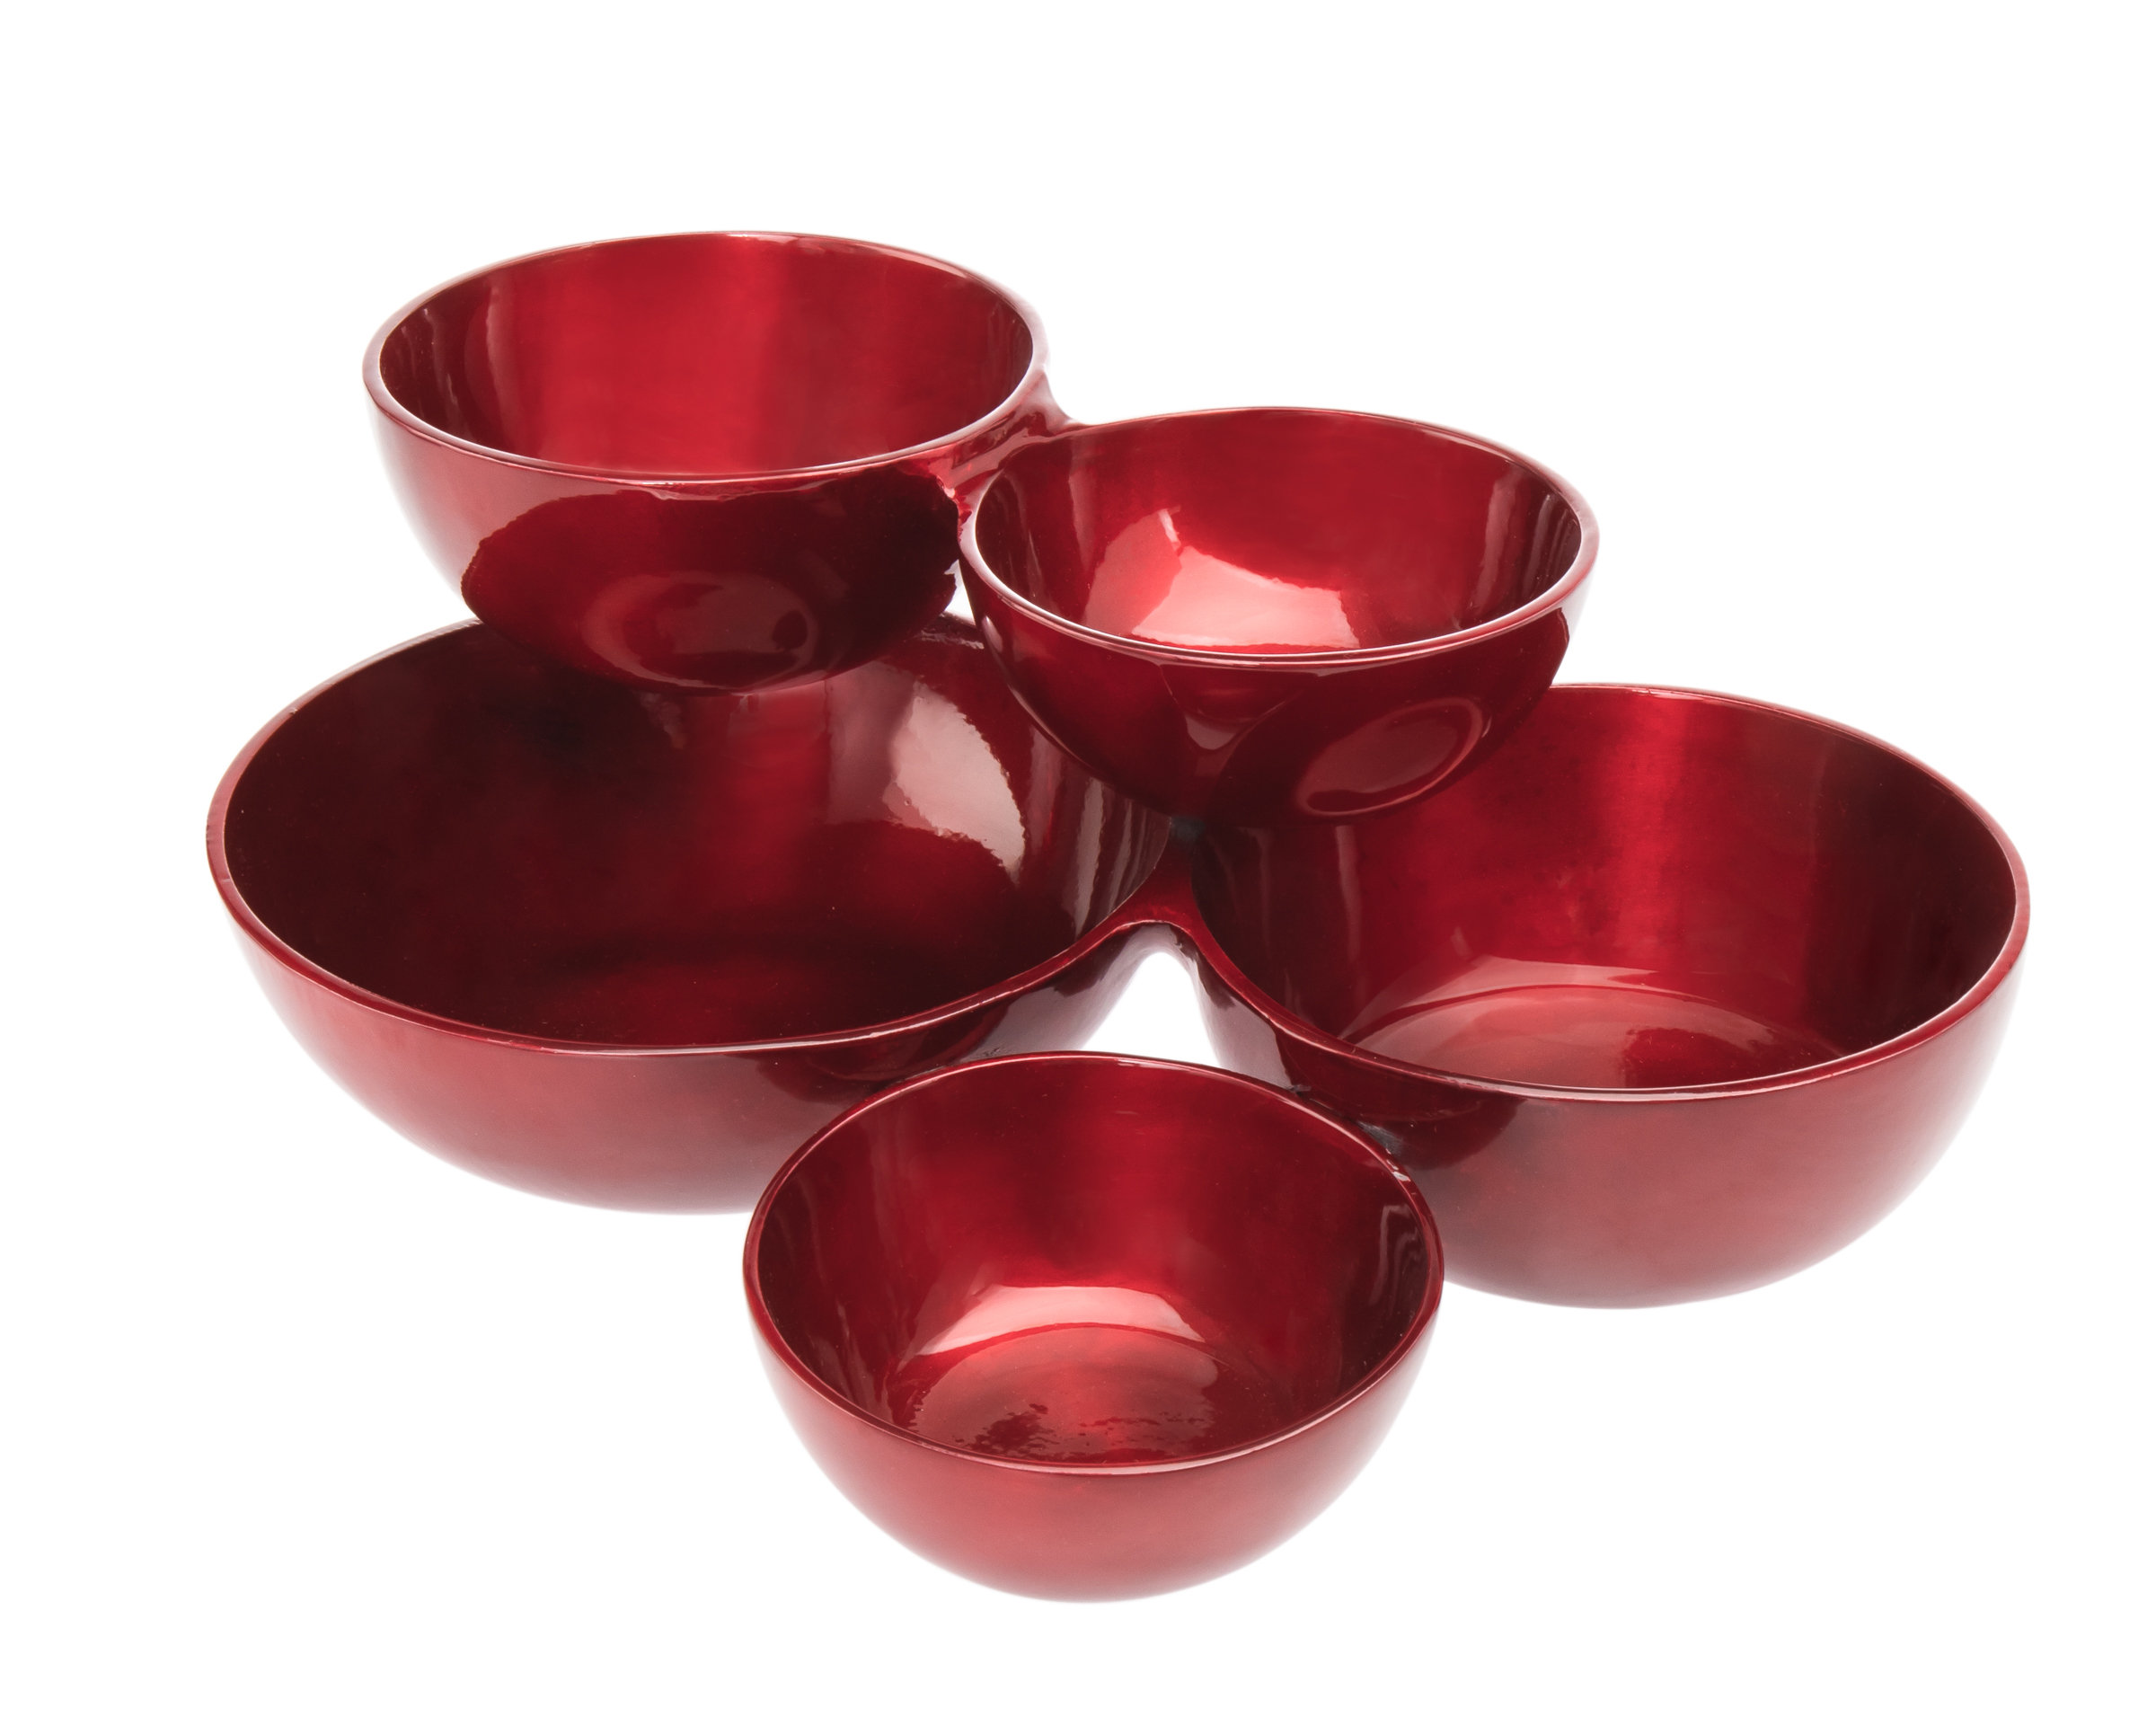 https://assets.wfcdn.com/im/52126921/compr-r85/2351/235126899/red-cluster-serving-bowl.jpg